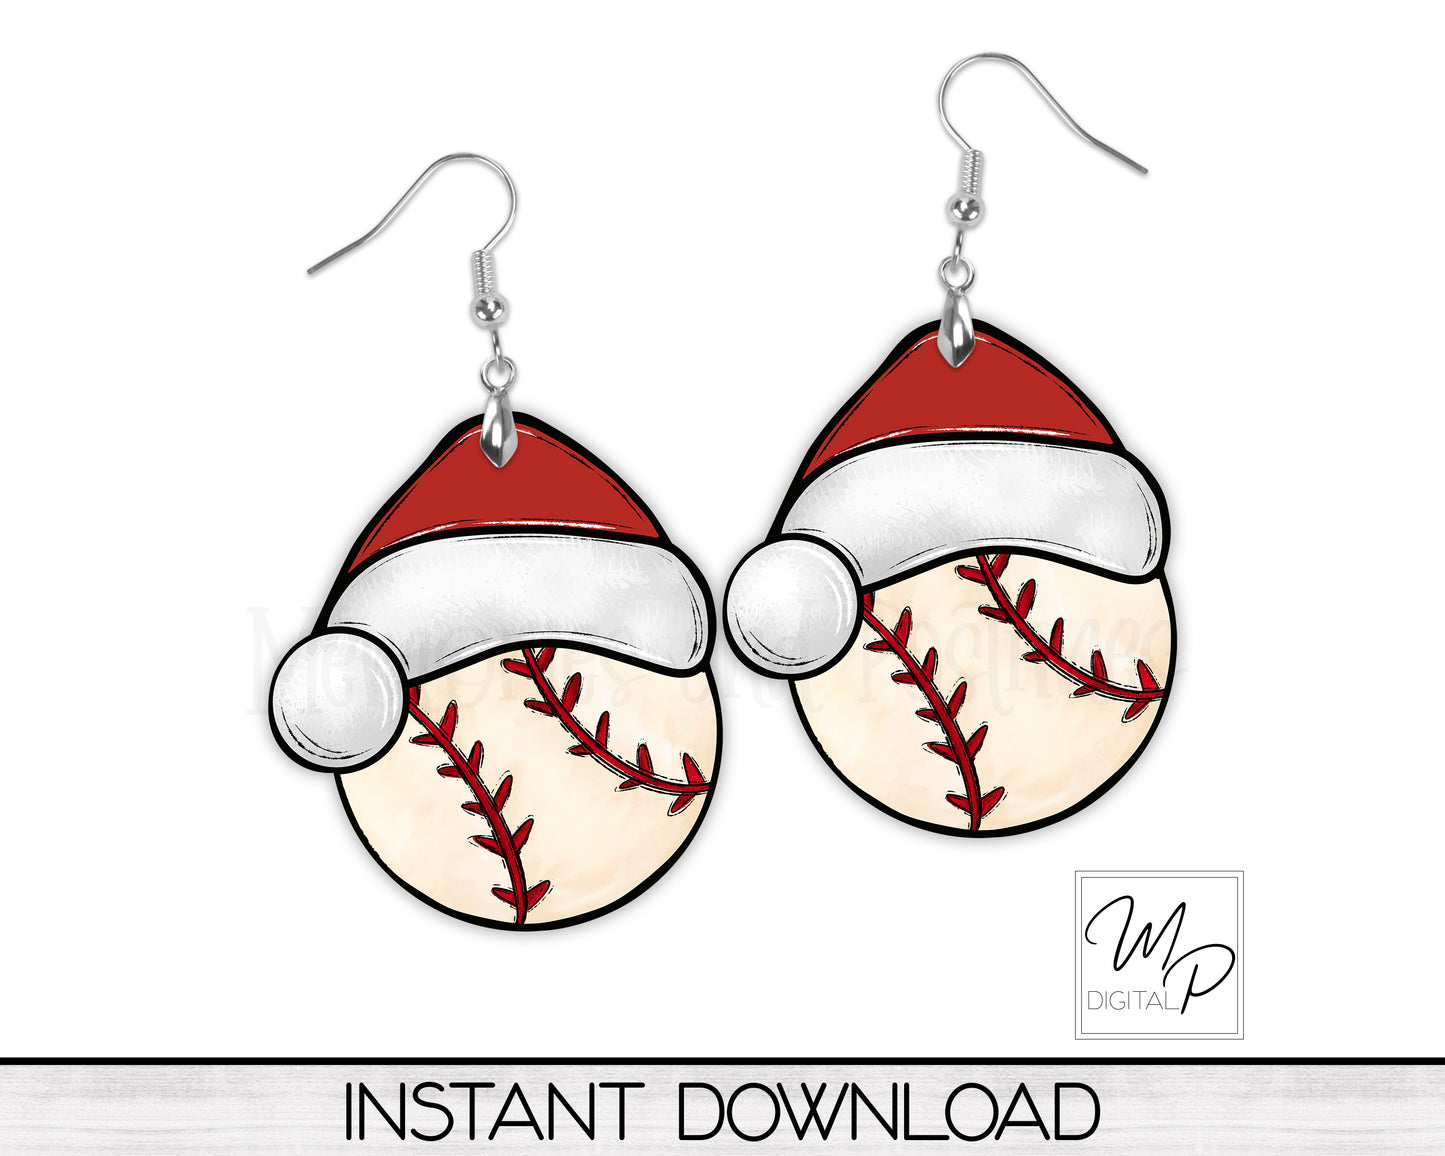 Christmas Baseball Santa Hat PNG Design for Sublimation, Digital Download